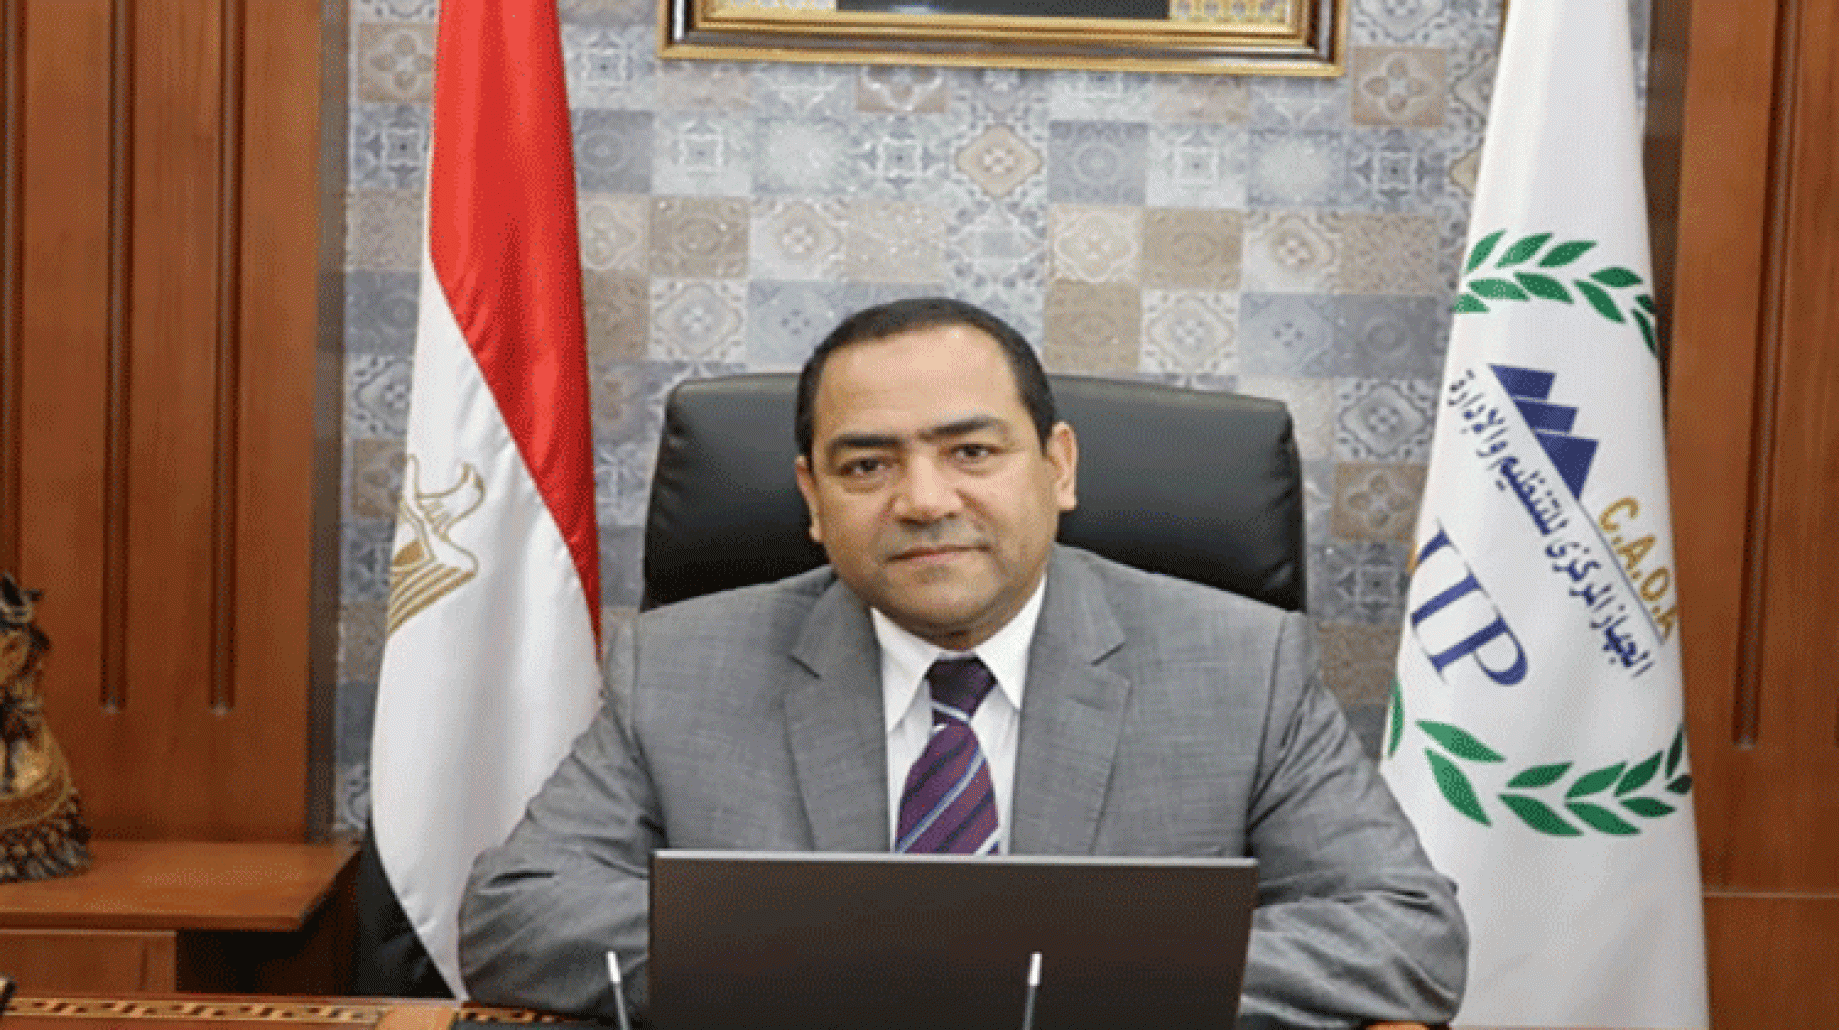  صالح الشيخ رئيس الجهاز المركزي للتنظيم والإدارة